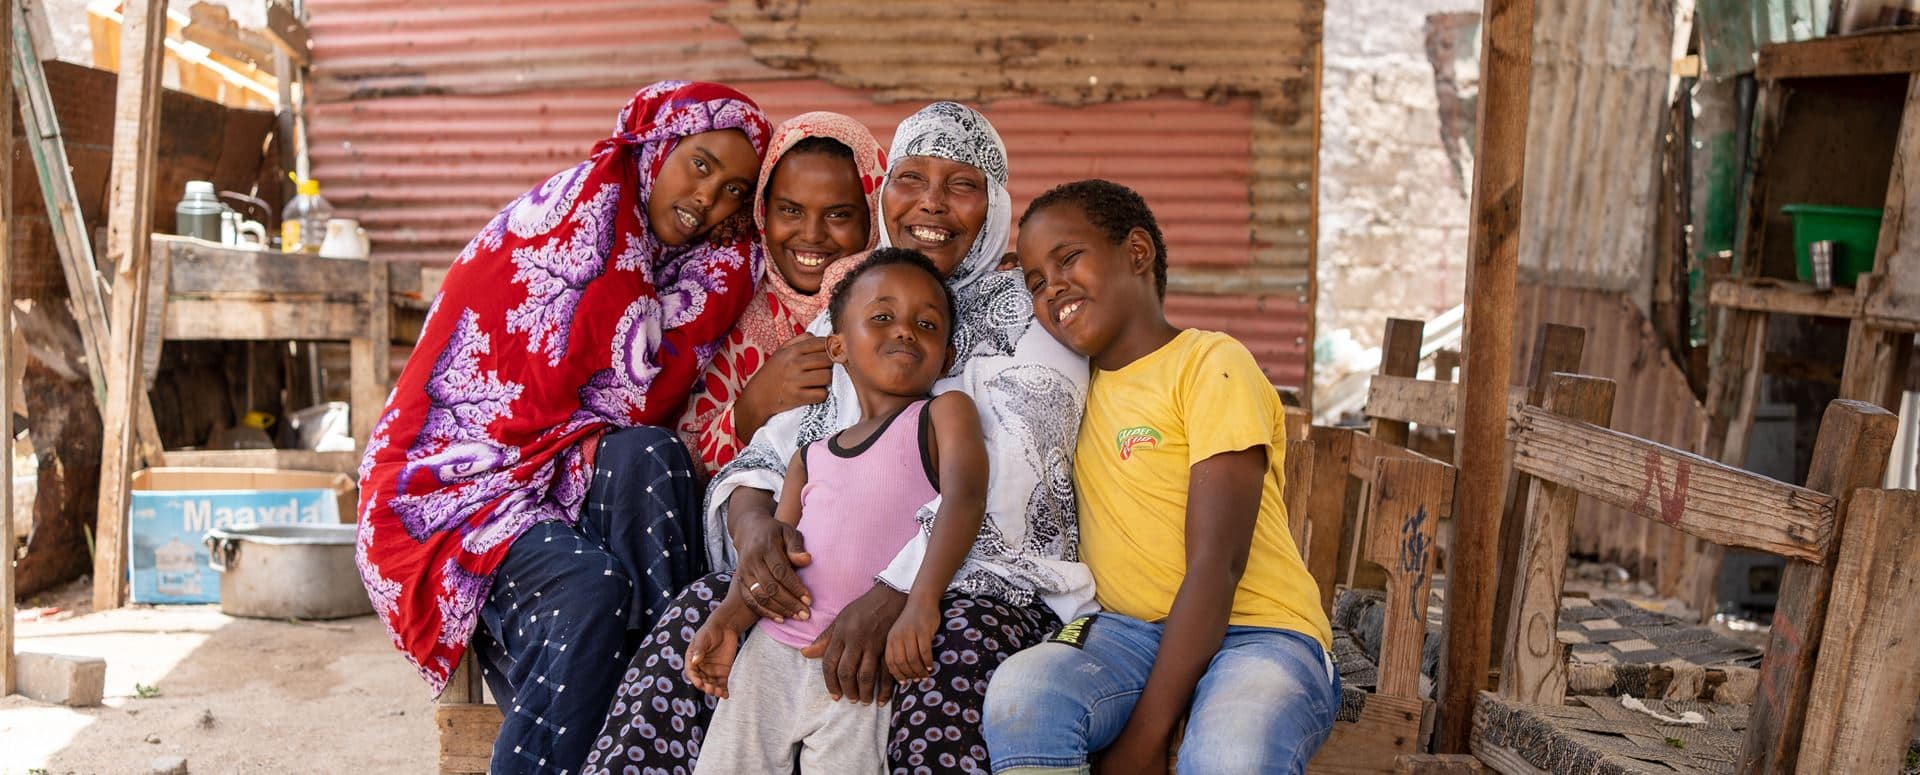 Hodan, med hvit mønstret hijab, sitter utenfor huset sammen med de fire barna. Jentene har fargerike hijaber, den minste gutten rosa t-skjorte og beige bukse, den eldste gutten gul ts-skjorte og jeans. Foto: Lydia Mantler